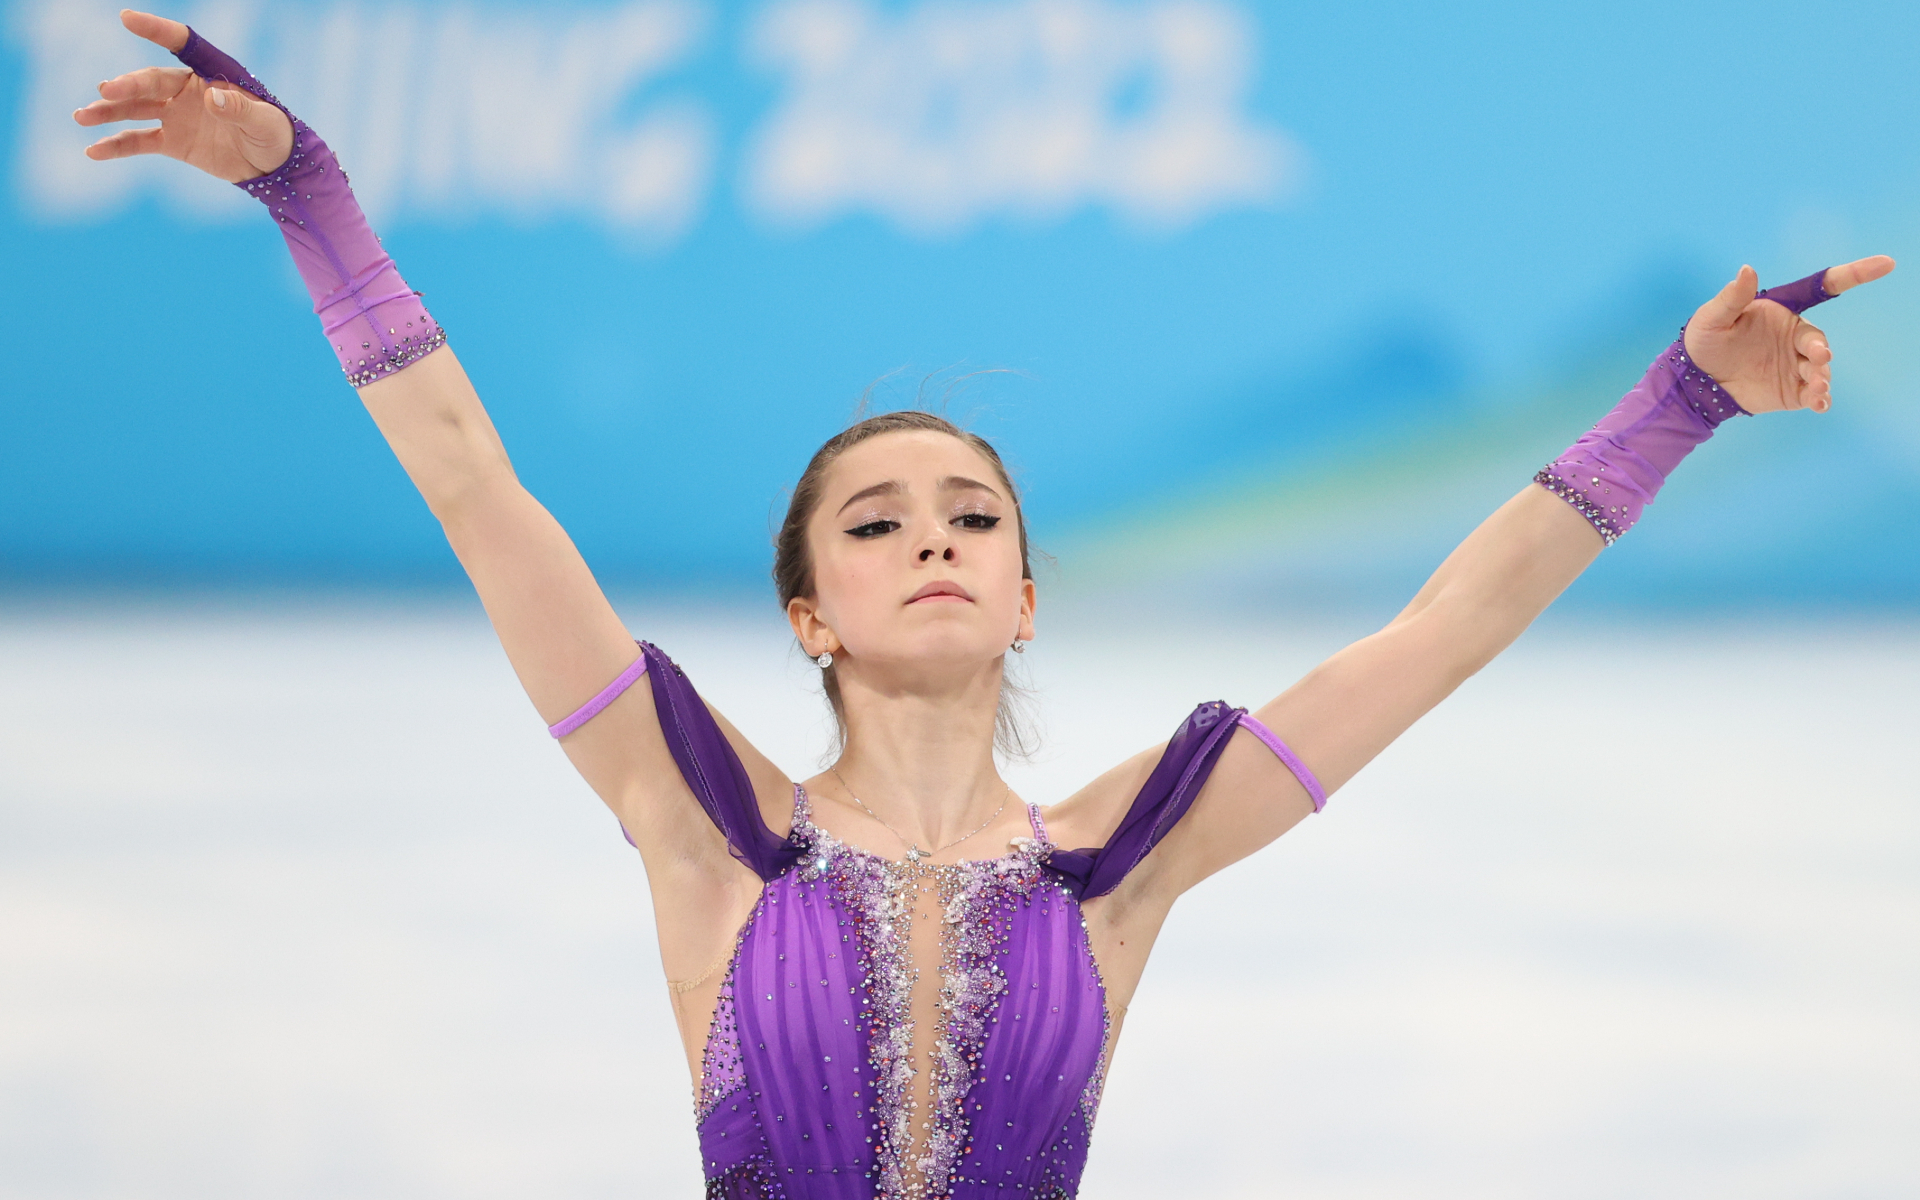 Сборная России завершила день на девятом месте в медальном зачете Игр :: Олимпиада 2022 :: РБК Спорт